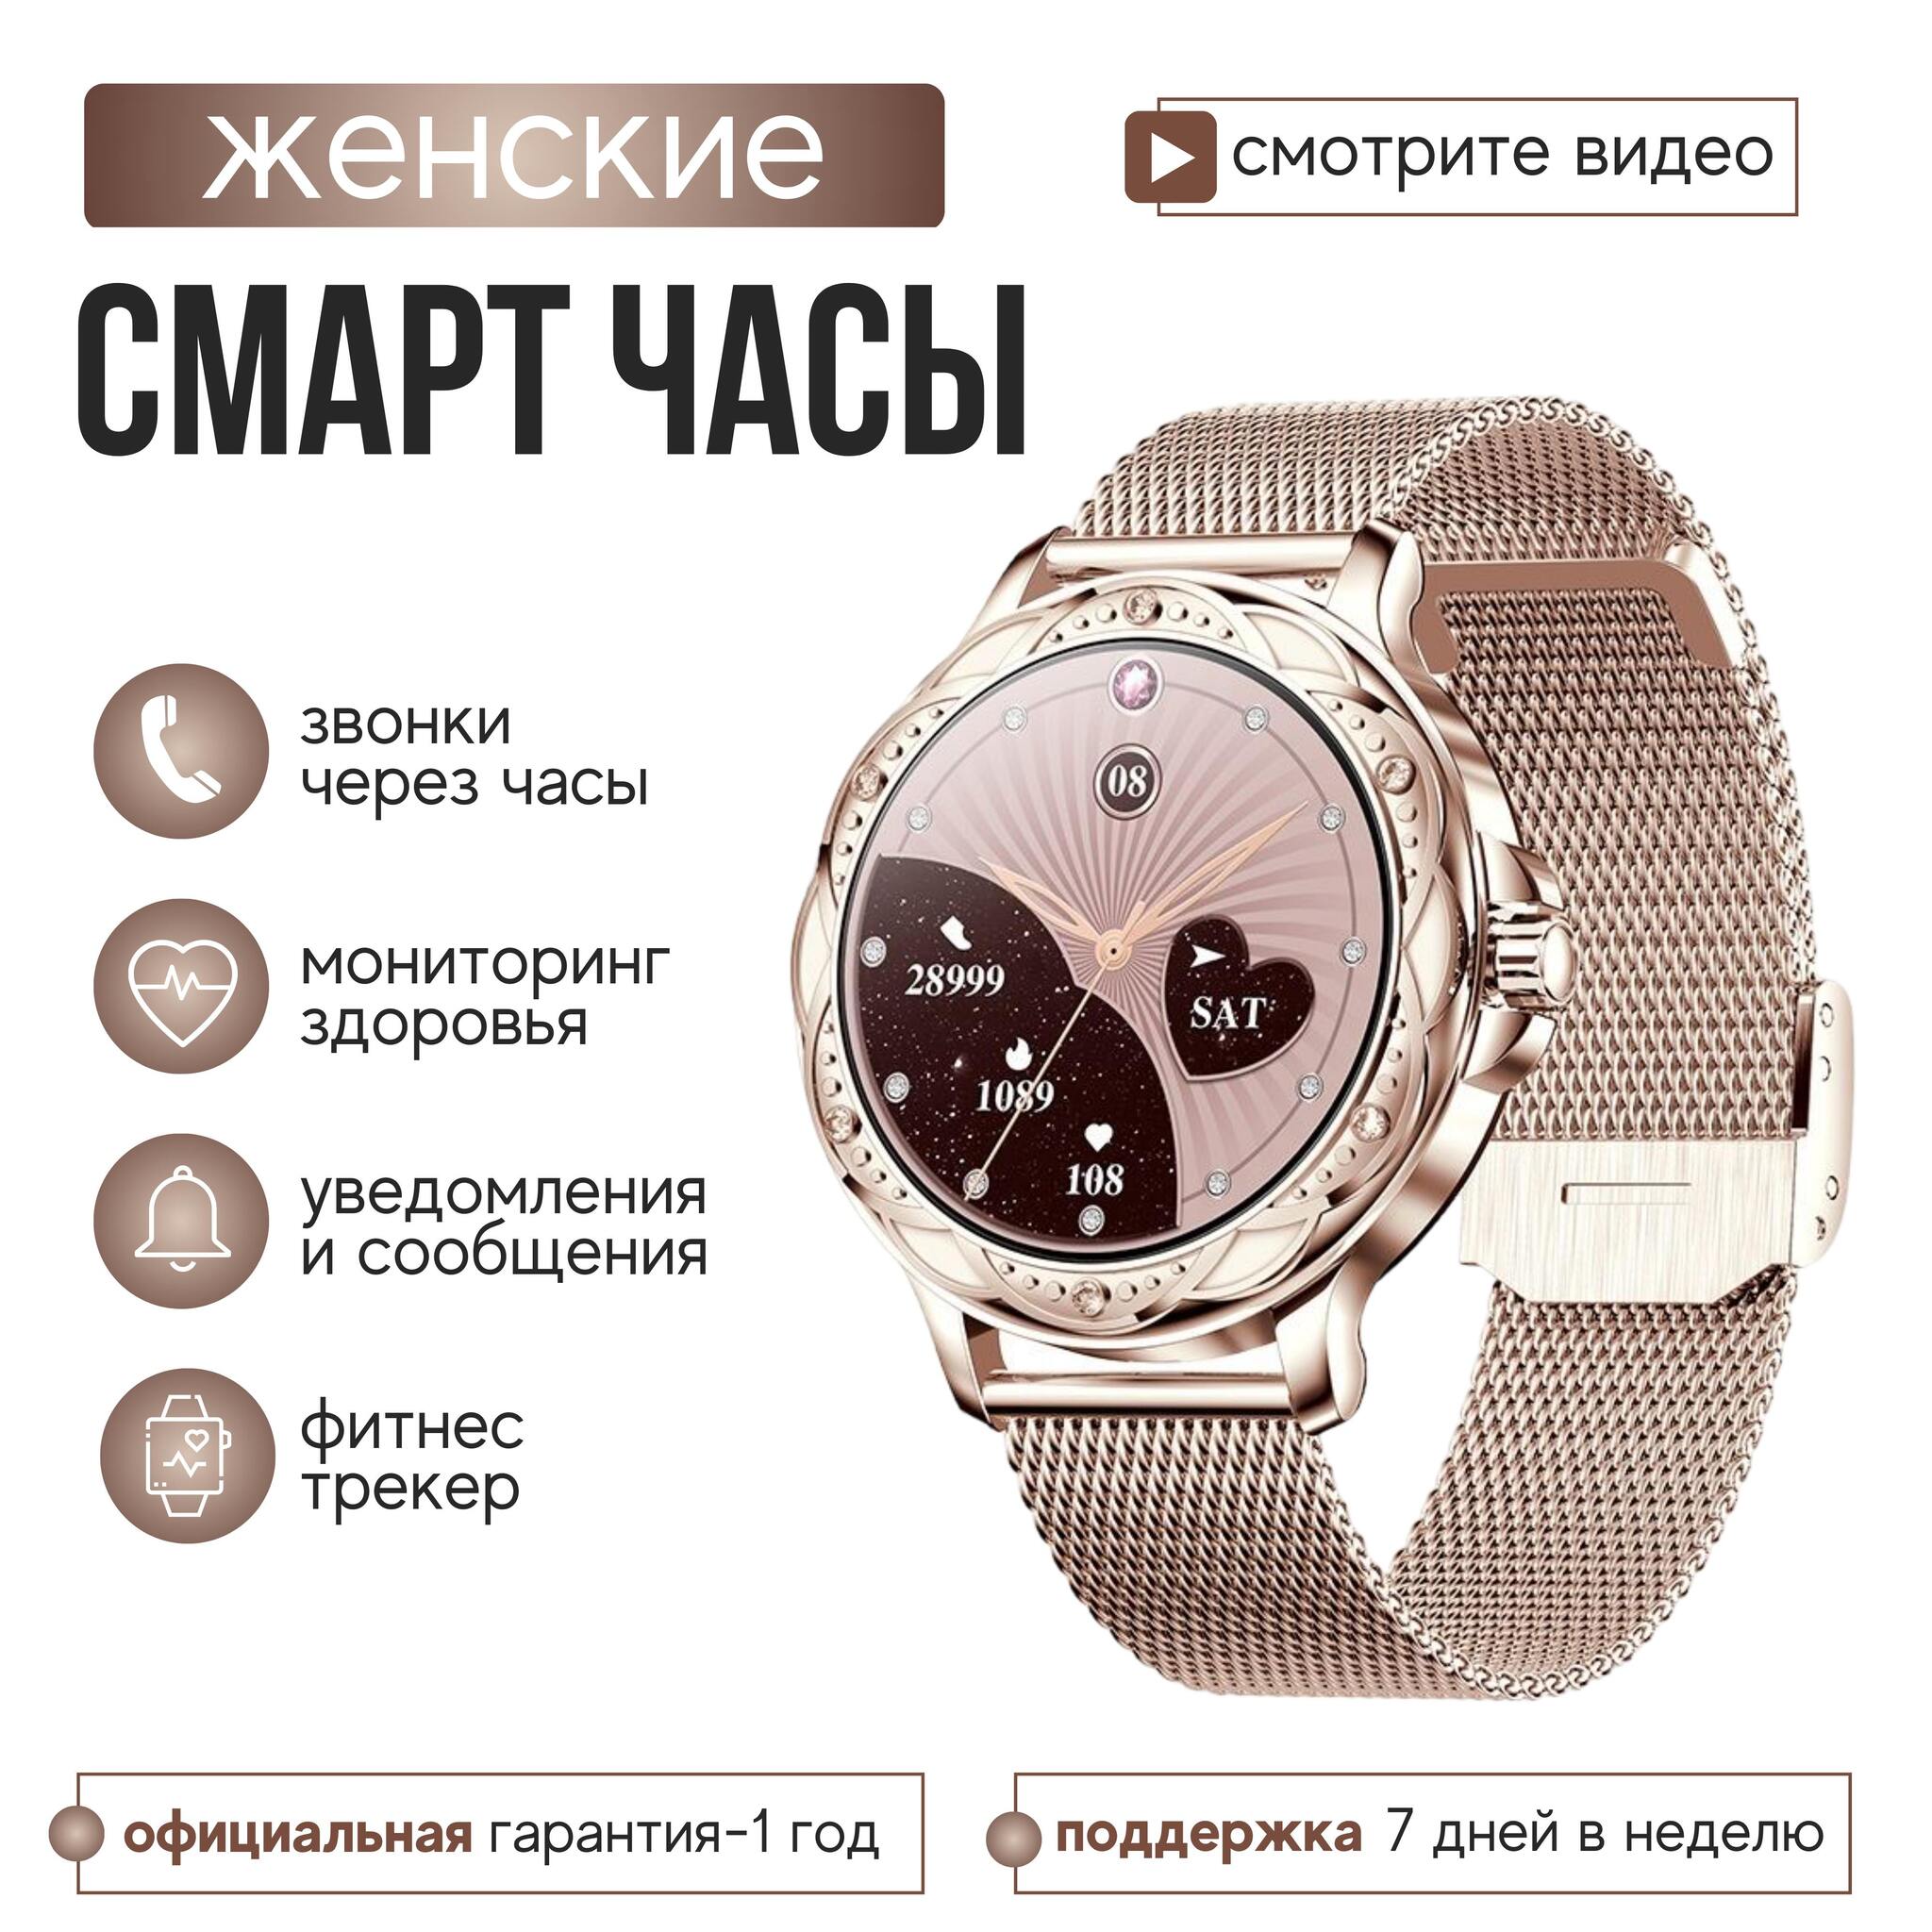 Купить смарт-часы Apple Watch в Ташкенте в рассрочку, цены